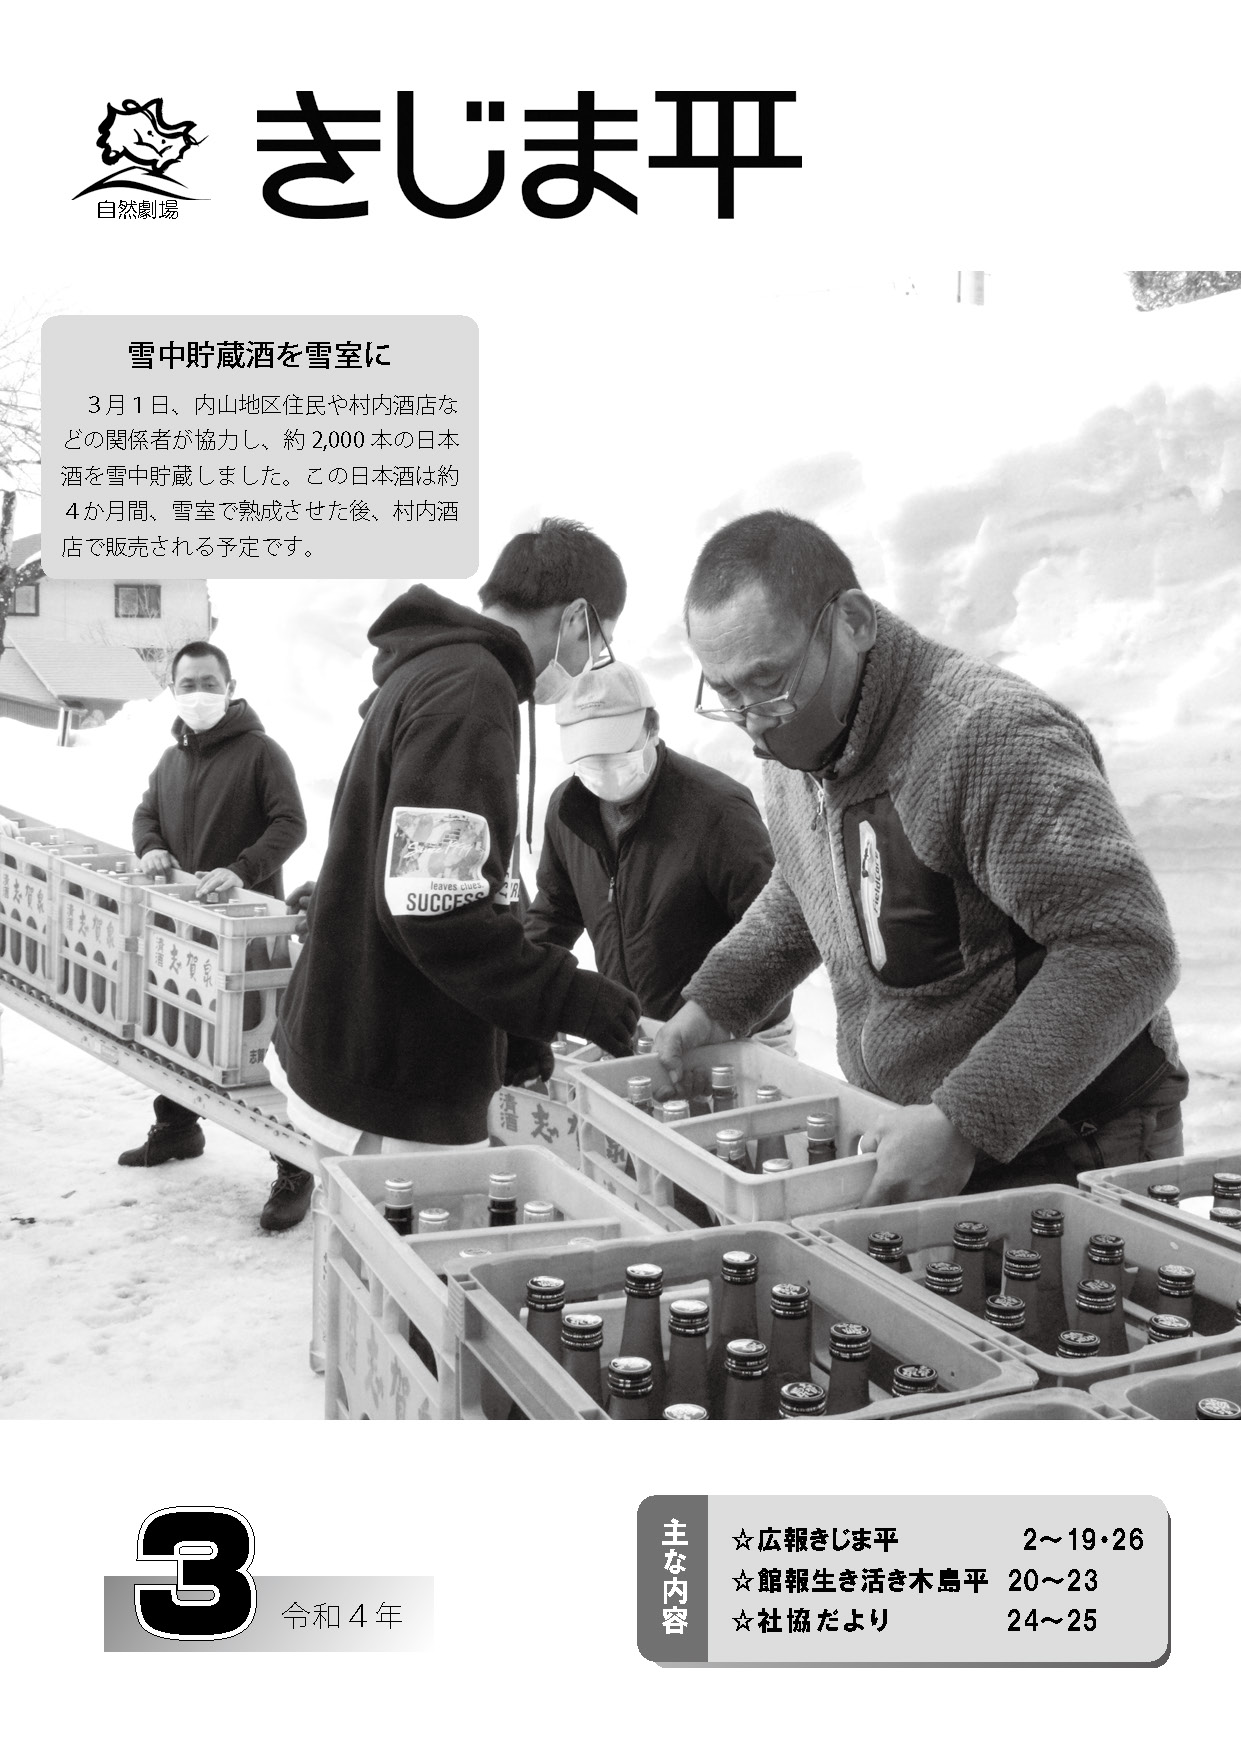 日本酒を雪中貯蔵する様子